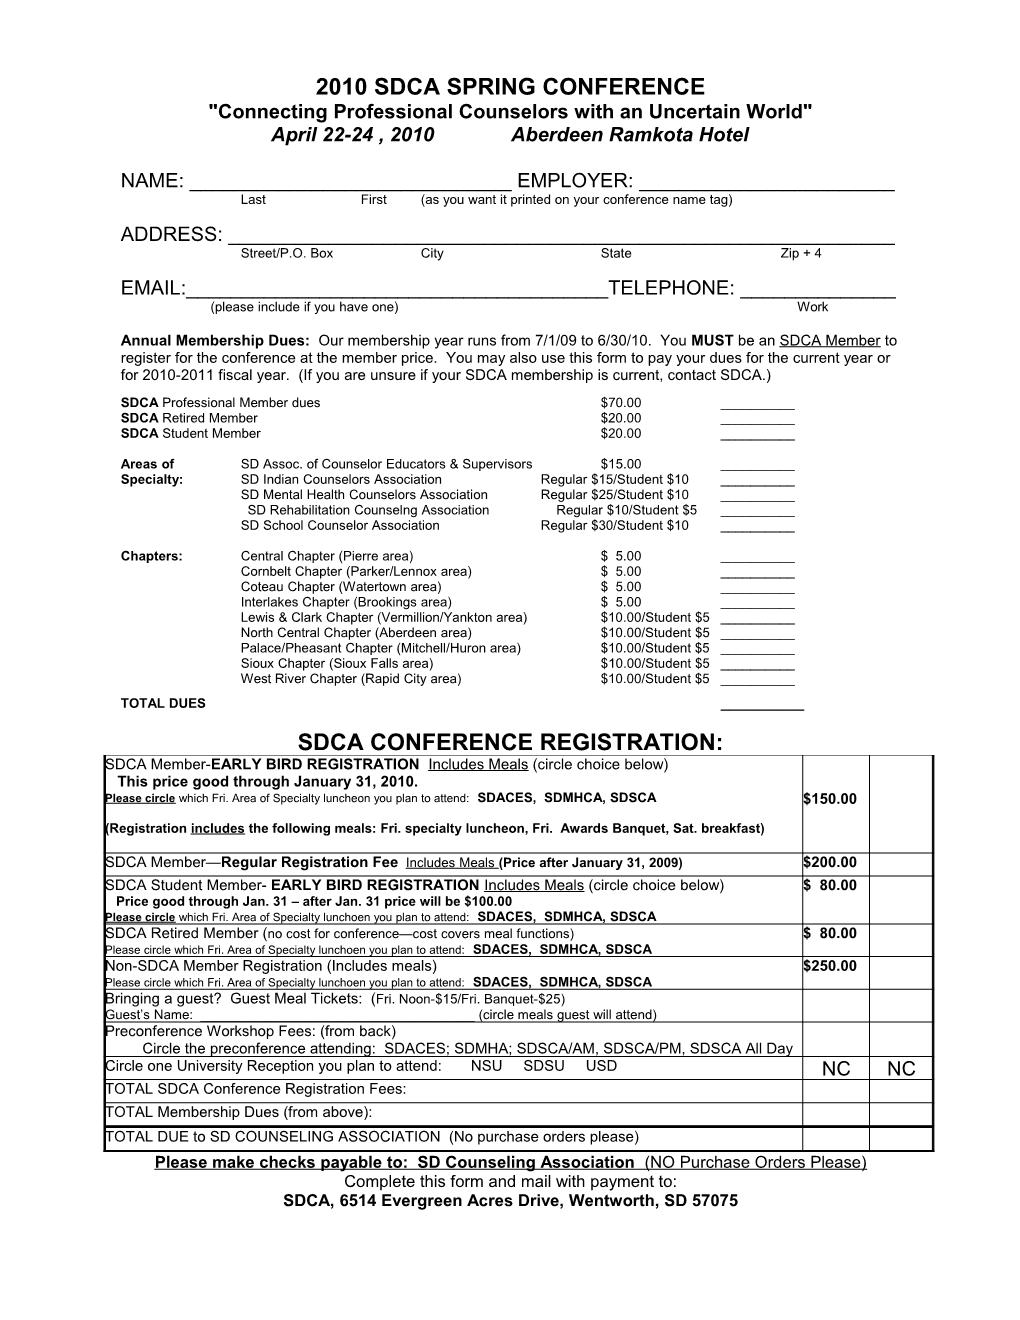 2005 SDCA Spring Conference Pre-Registration Form